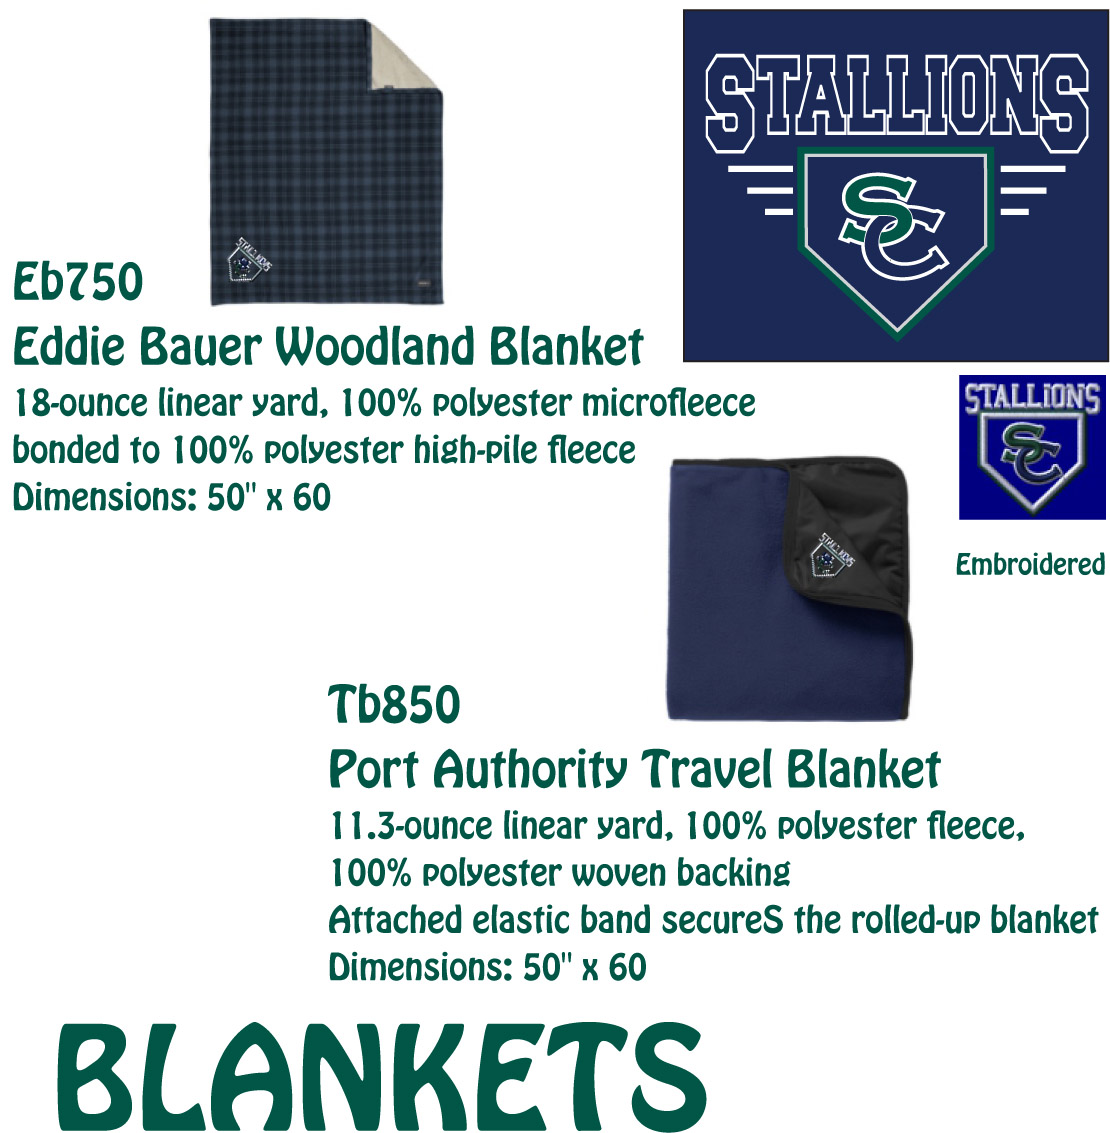 SC Baseball Blankets